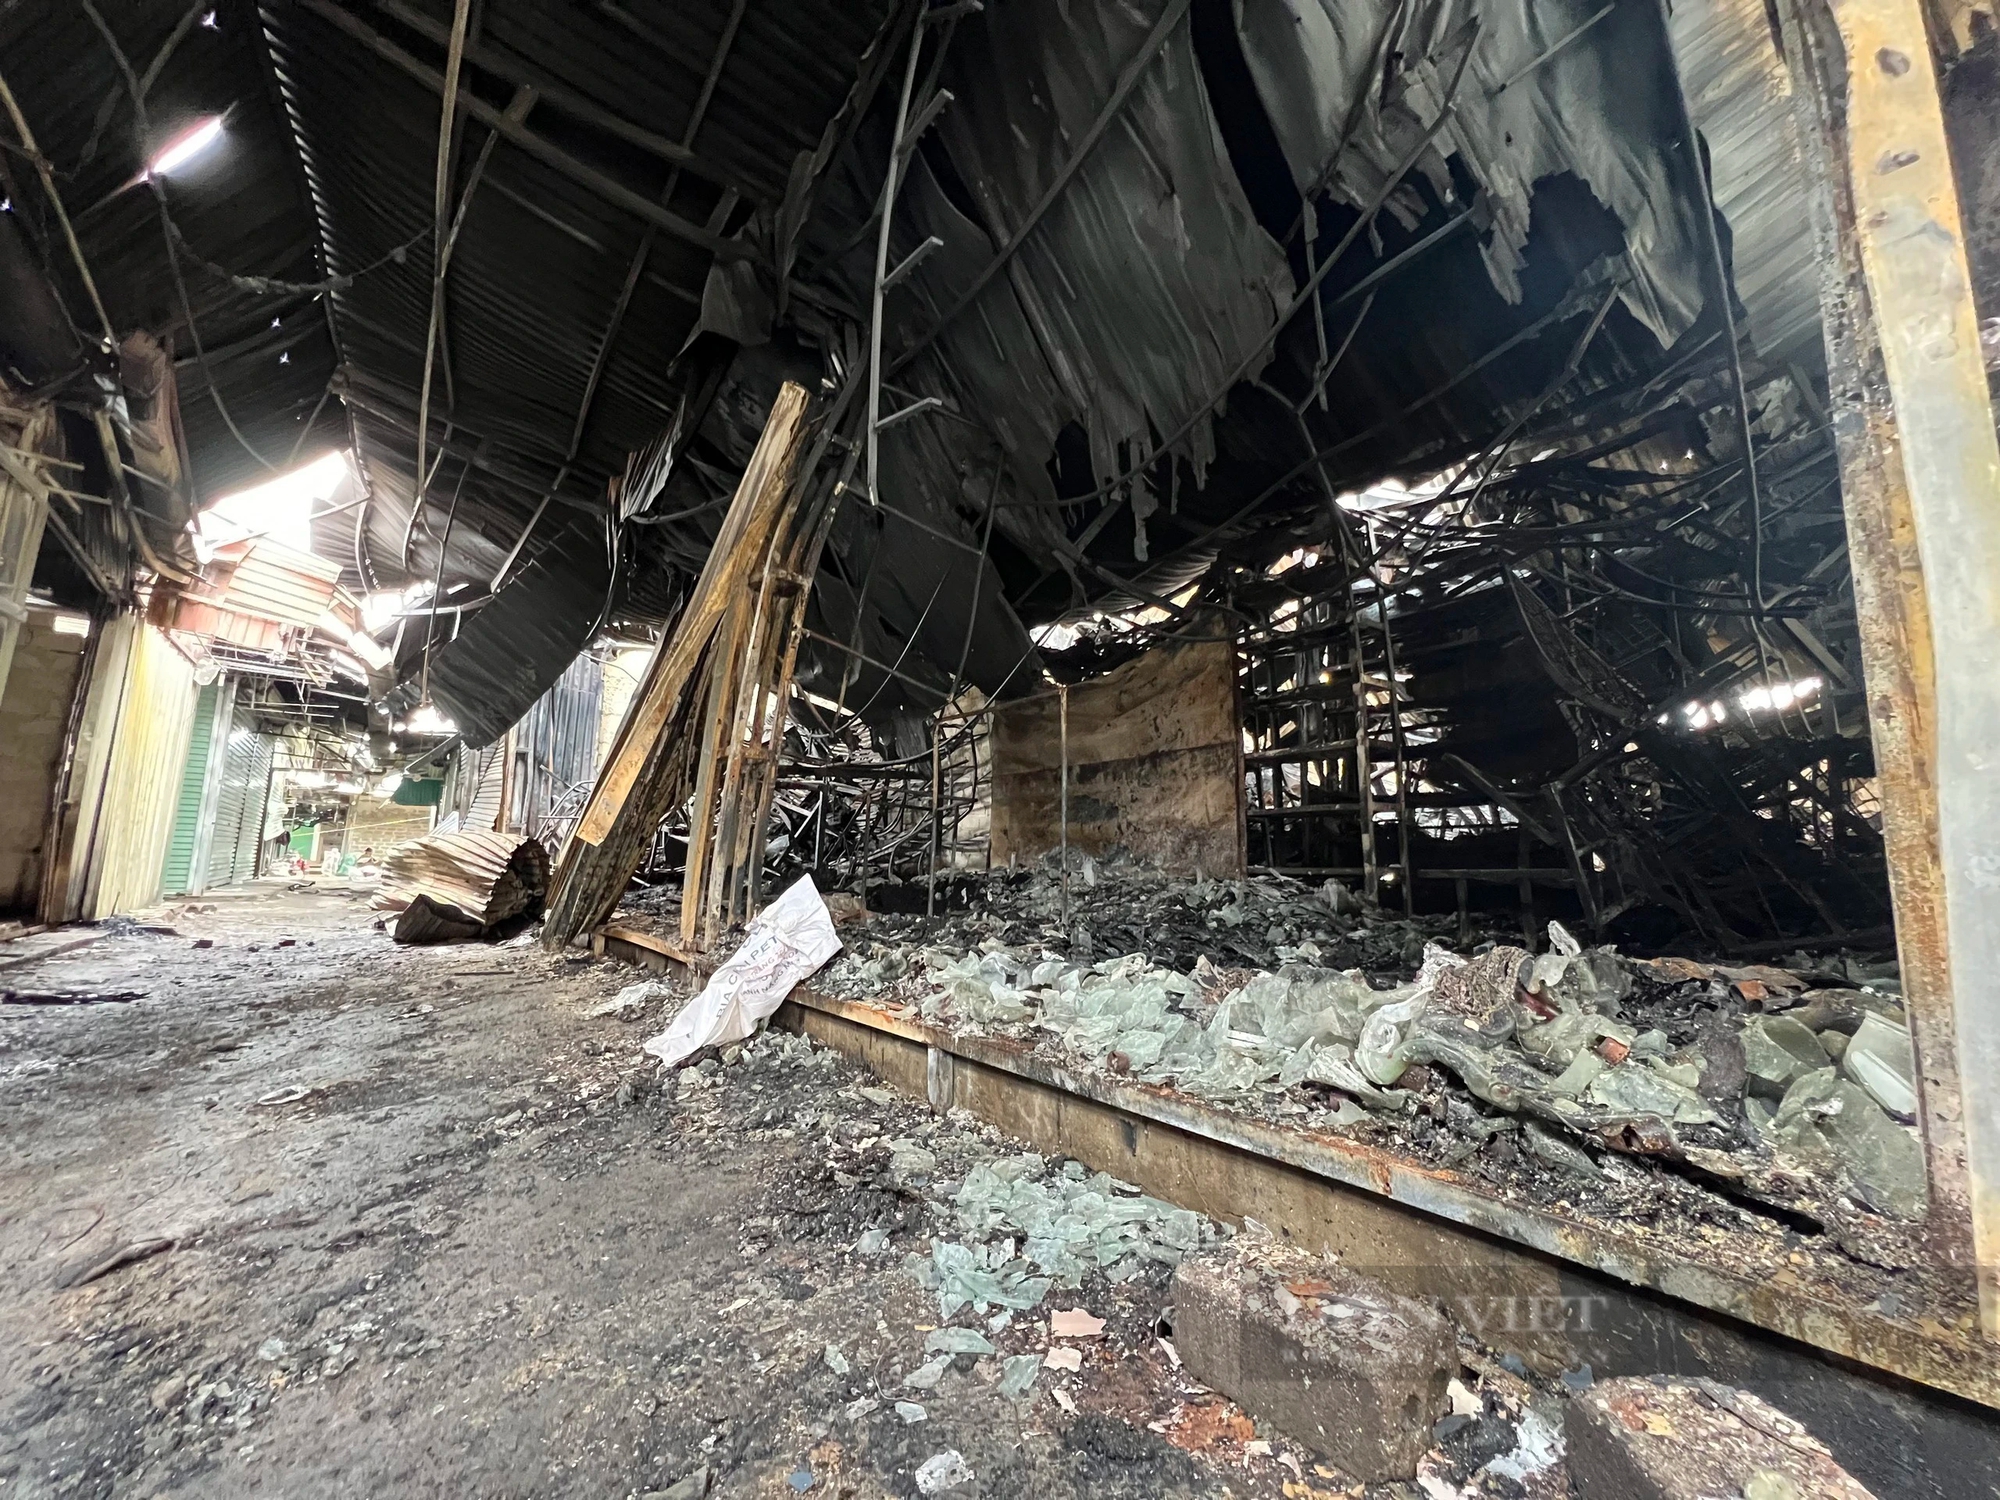 Khung cảnh tan hoang sau vụ cháy chợ Hàng Trạm, Hòa Bình- Ảnh 4.